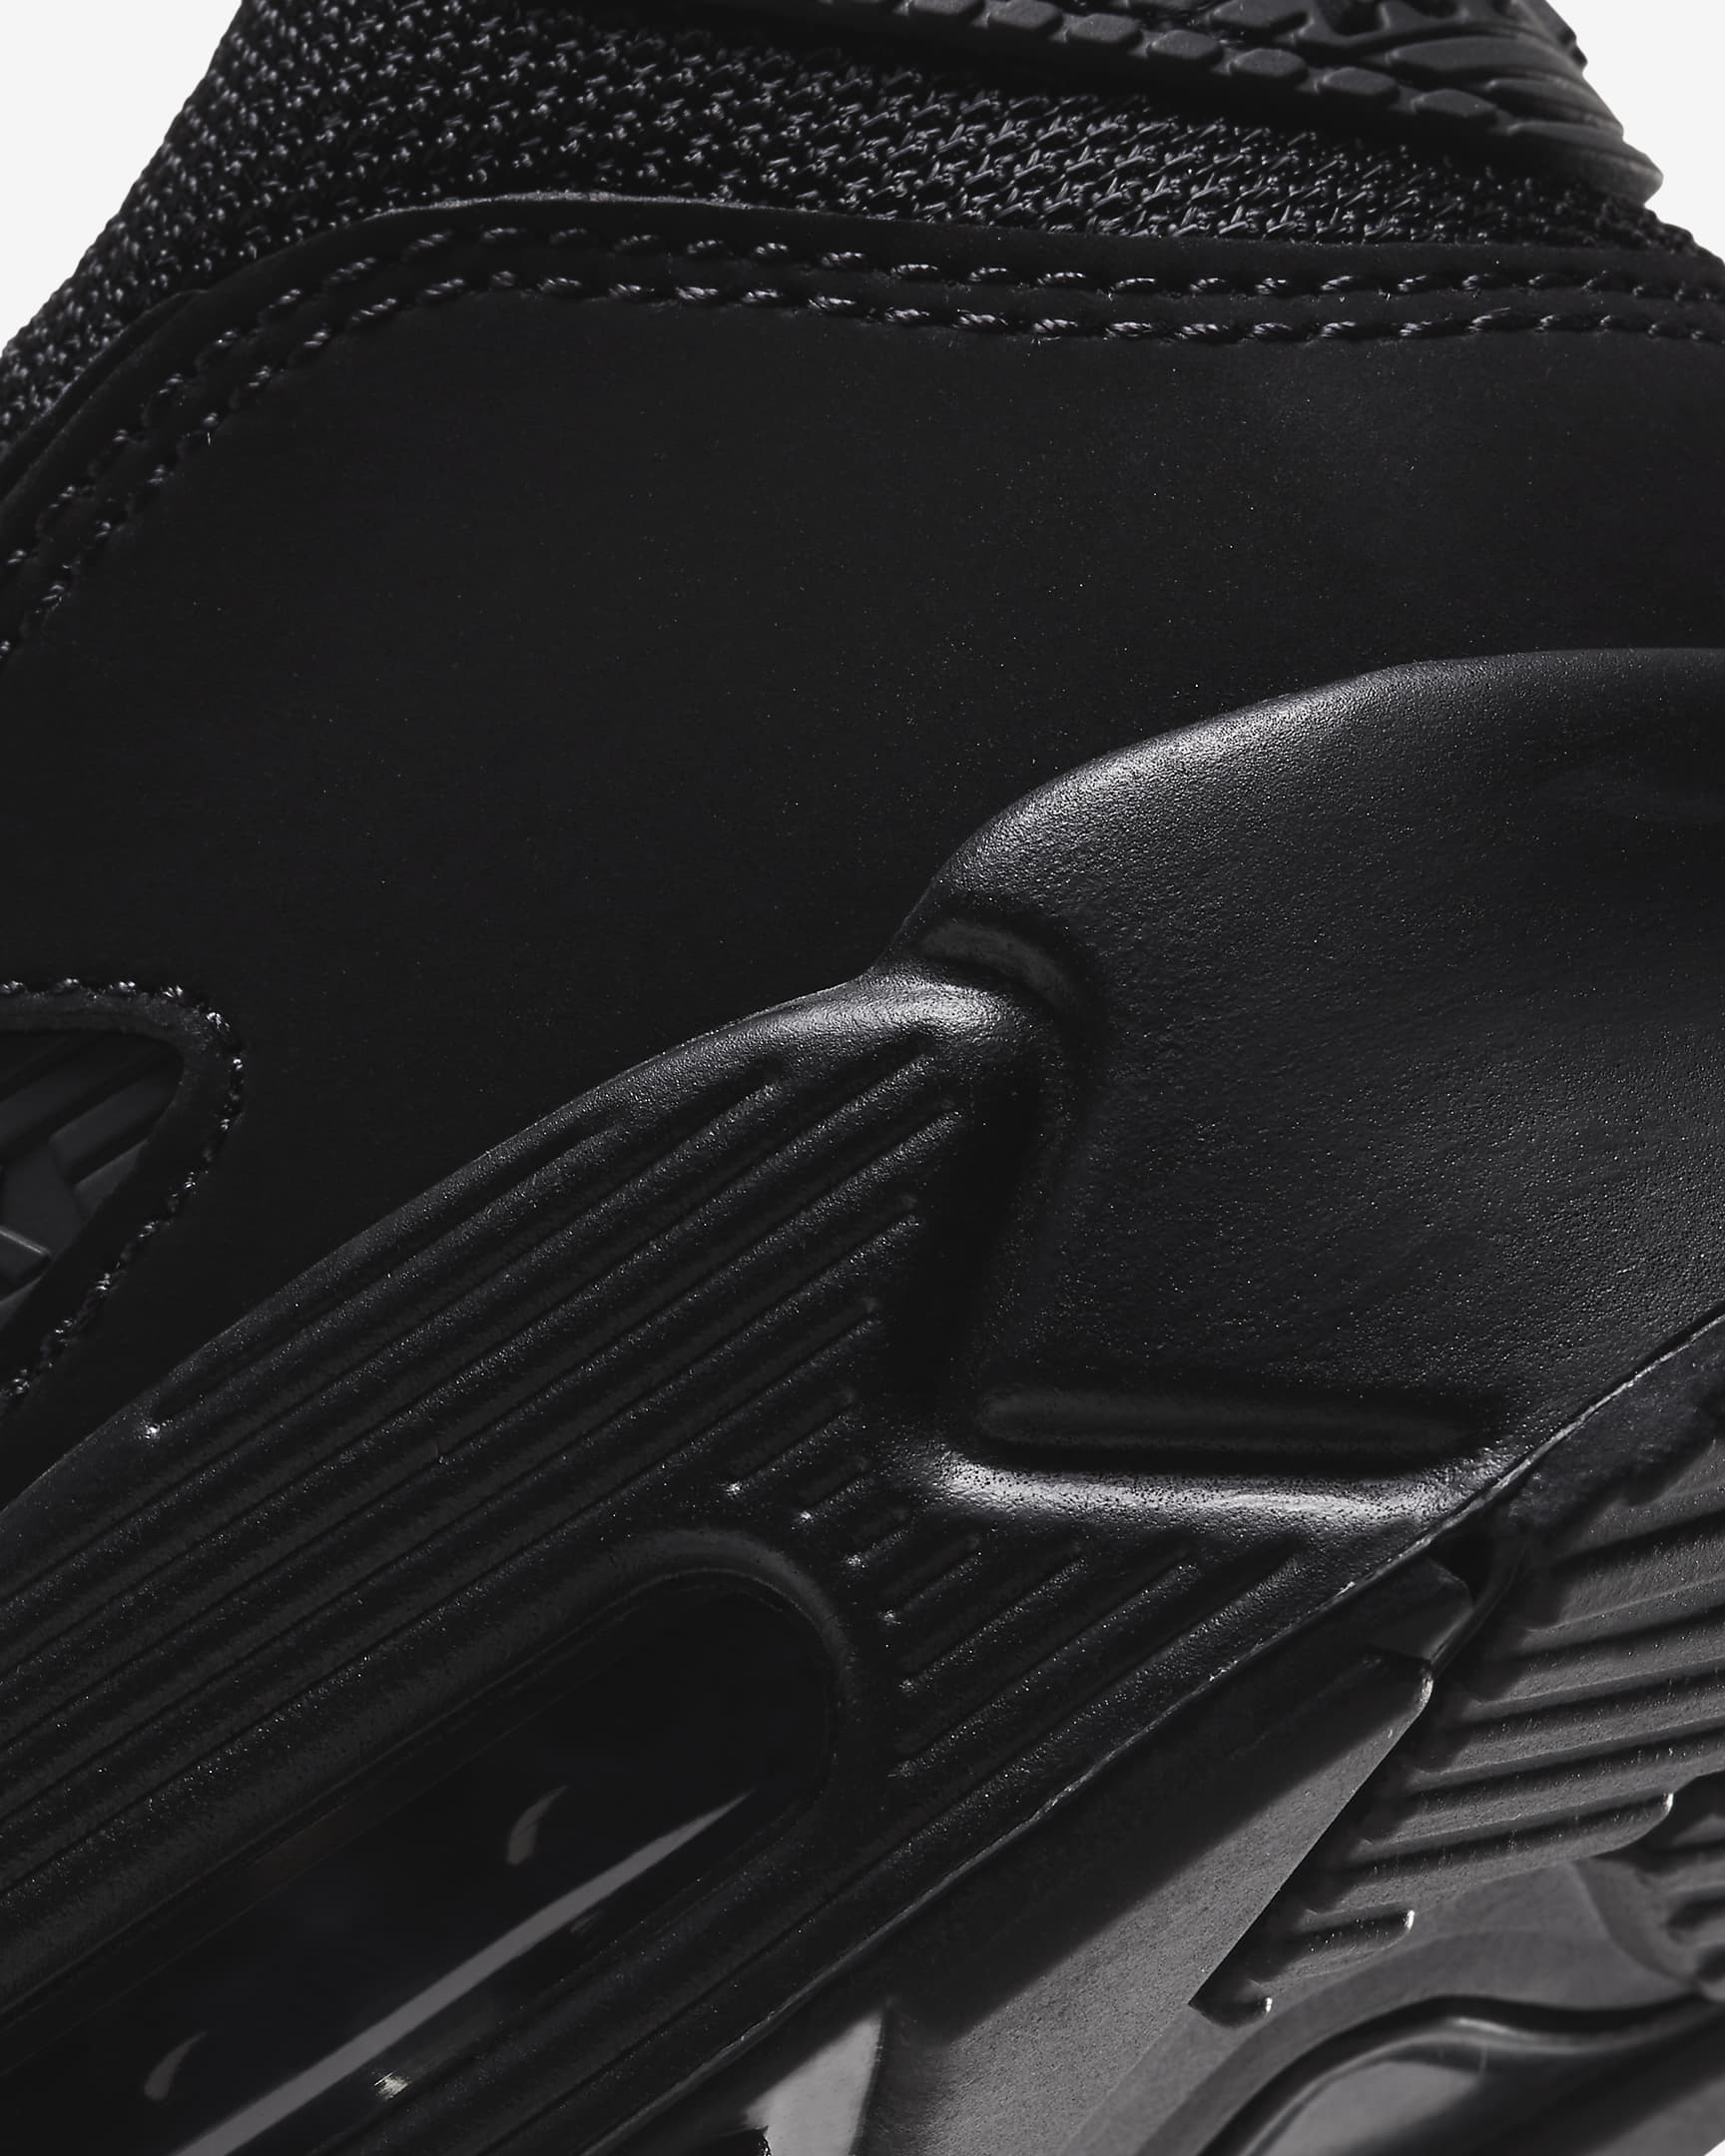 Nike Air Max 90 Men's Shoes - Black/Black/Black/Black